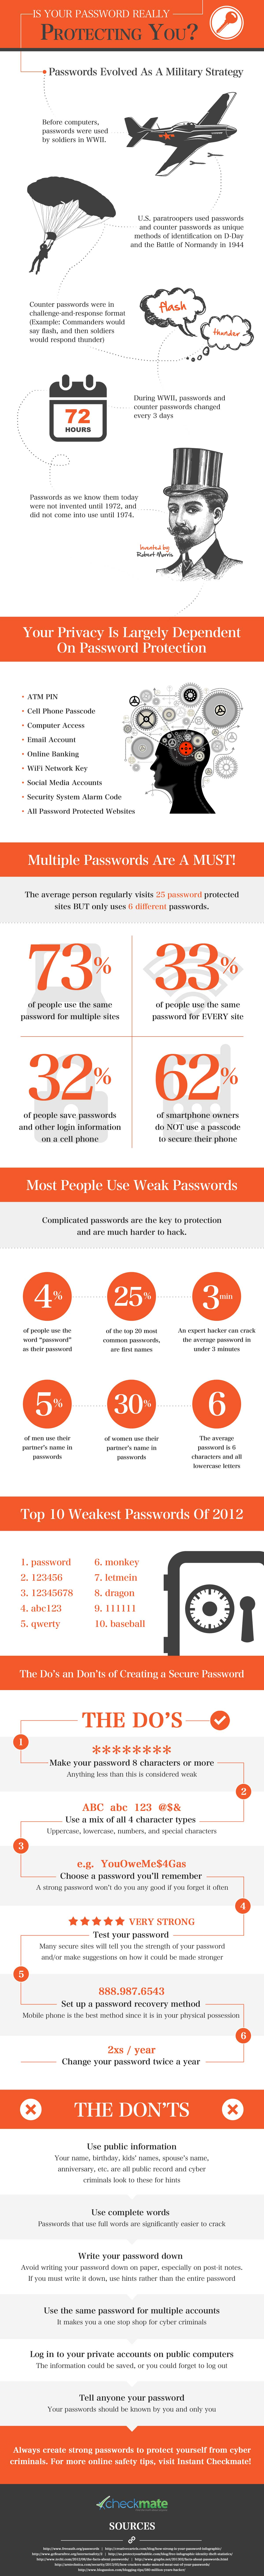 passwords-infographic